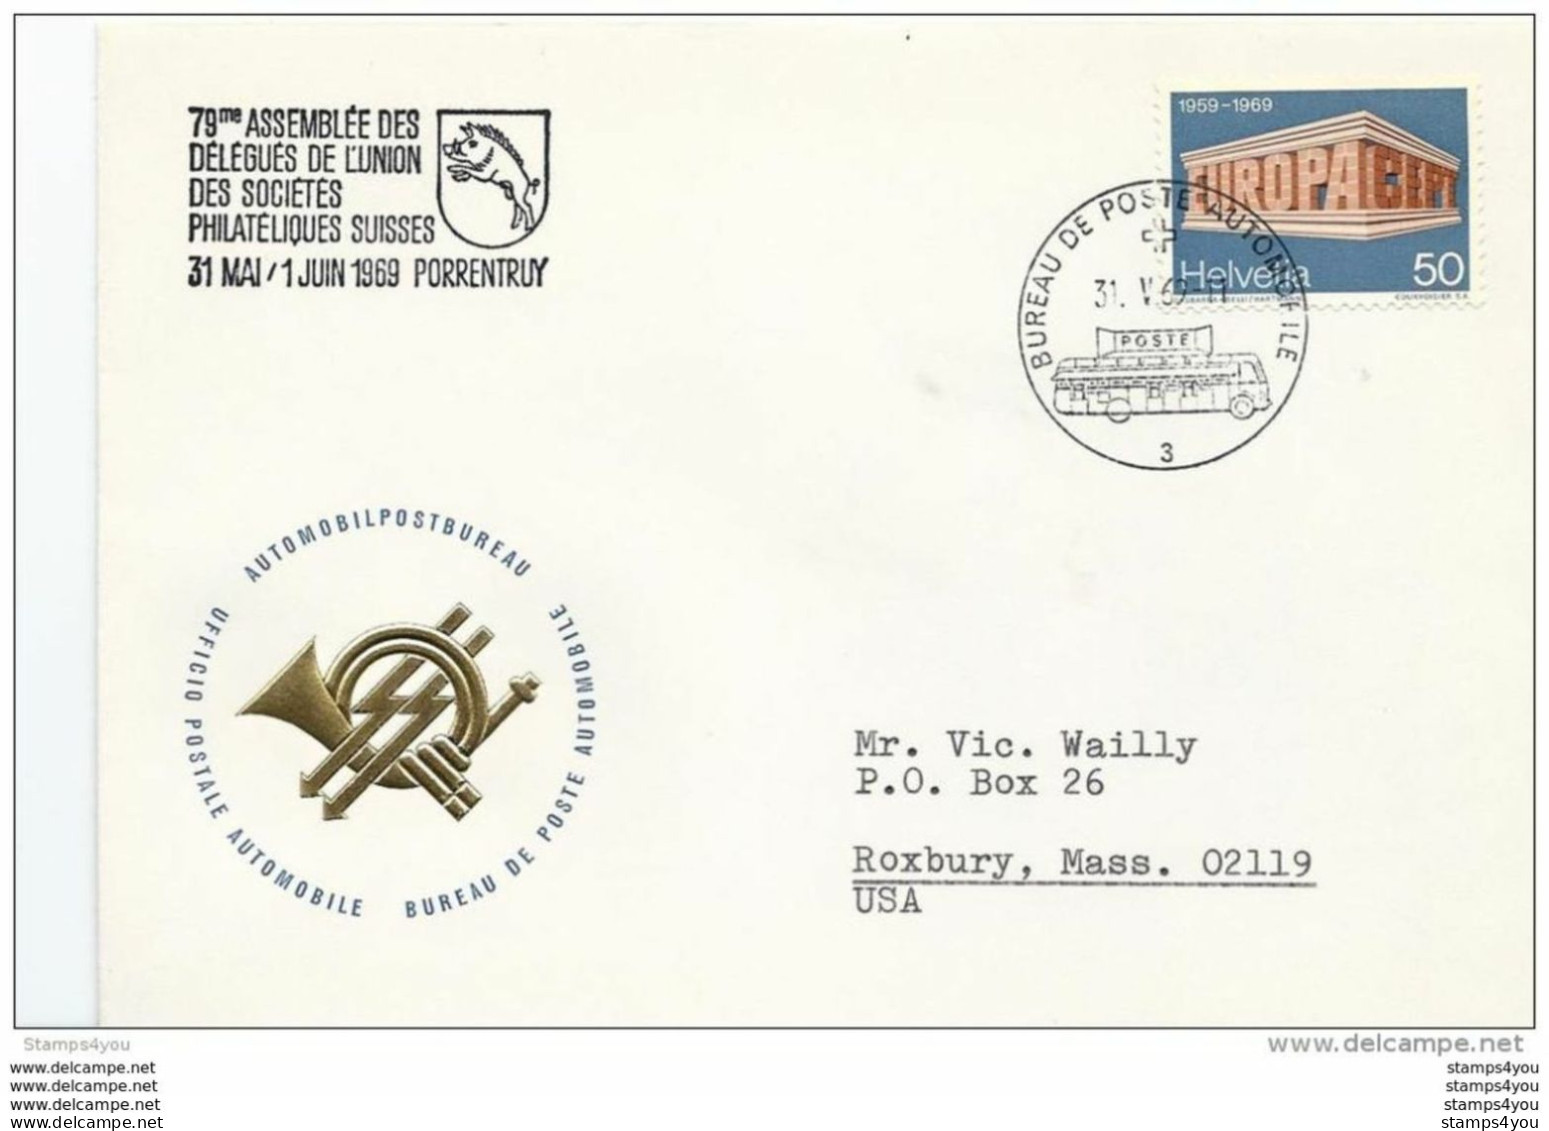 166 - 37 - Enveloppe Avec Oblit Spéciale "Assemblée De Délégués Porrentruy 1969" - Postmark Collection